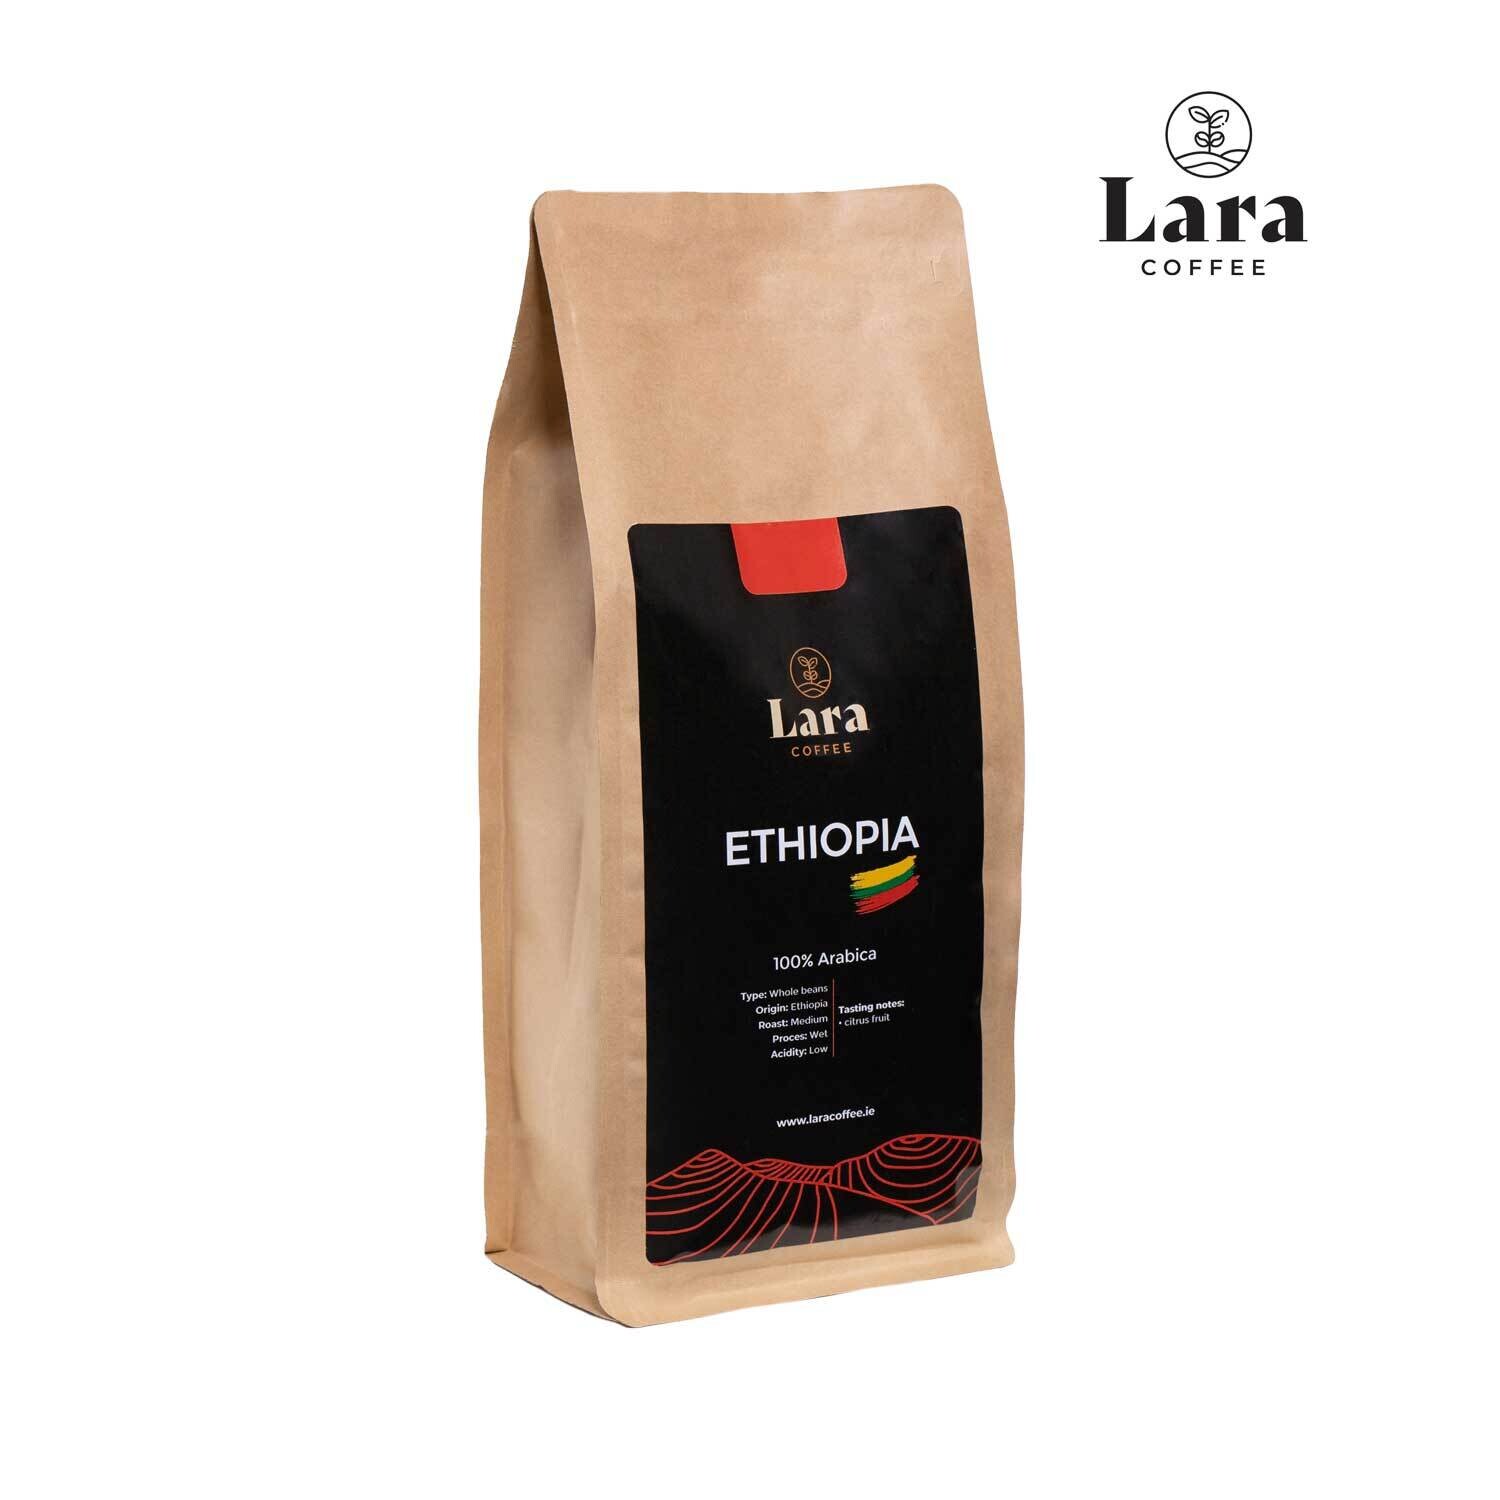 Lara Coffee Ethiopia Whole Beans 1kg